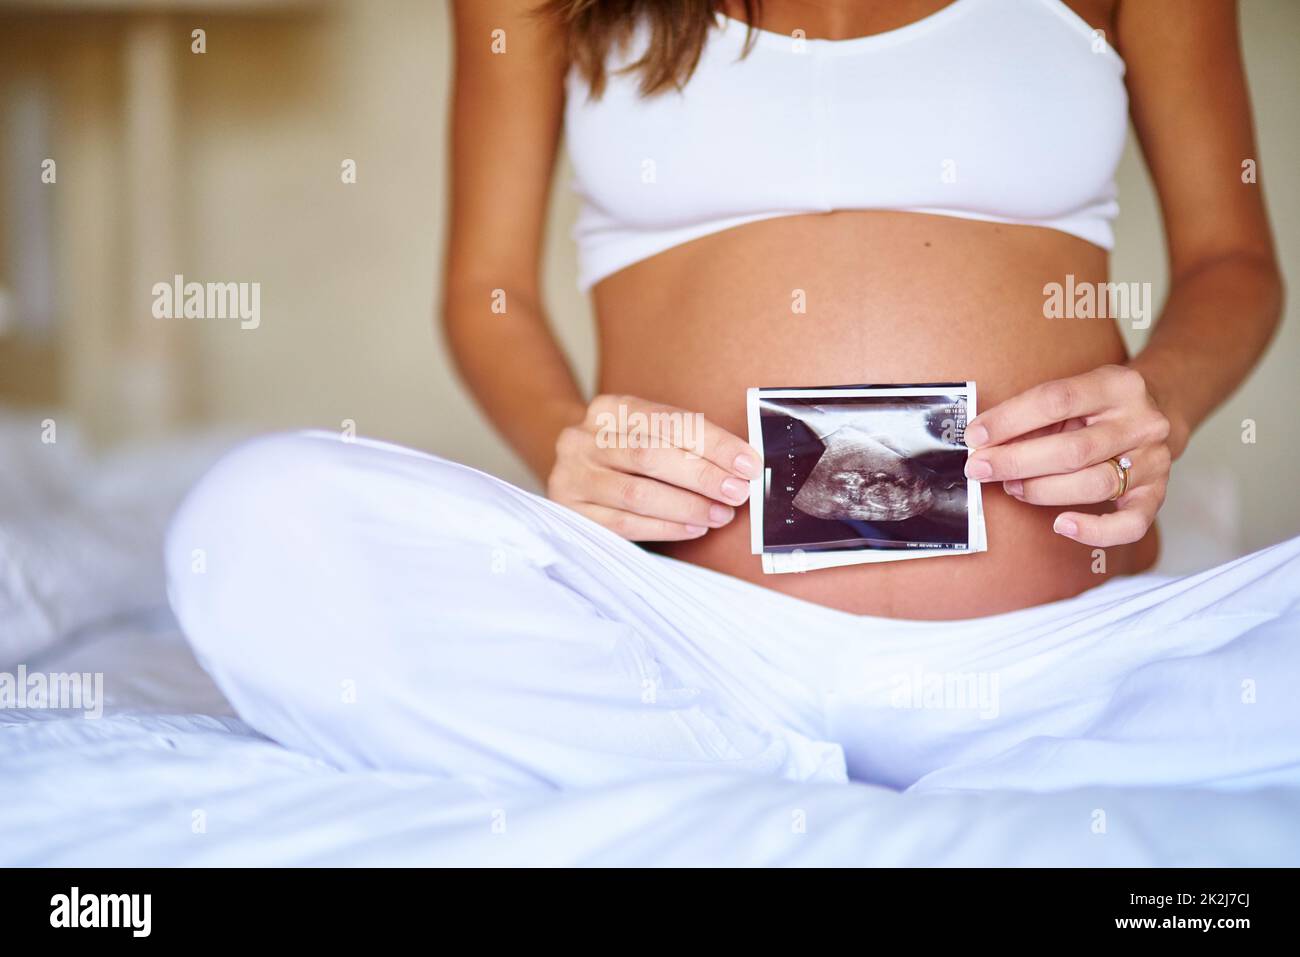 Shes est enthousiaste à l'idée de son petit enfant. Prise de vue d'une femme enceinte tenant une image d'un sonogramme devant son ventre. Banque D'Images